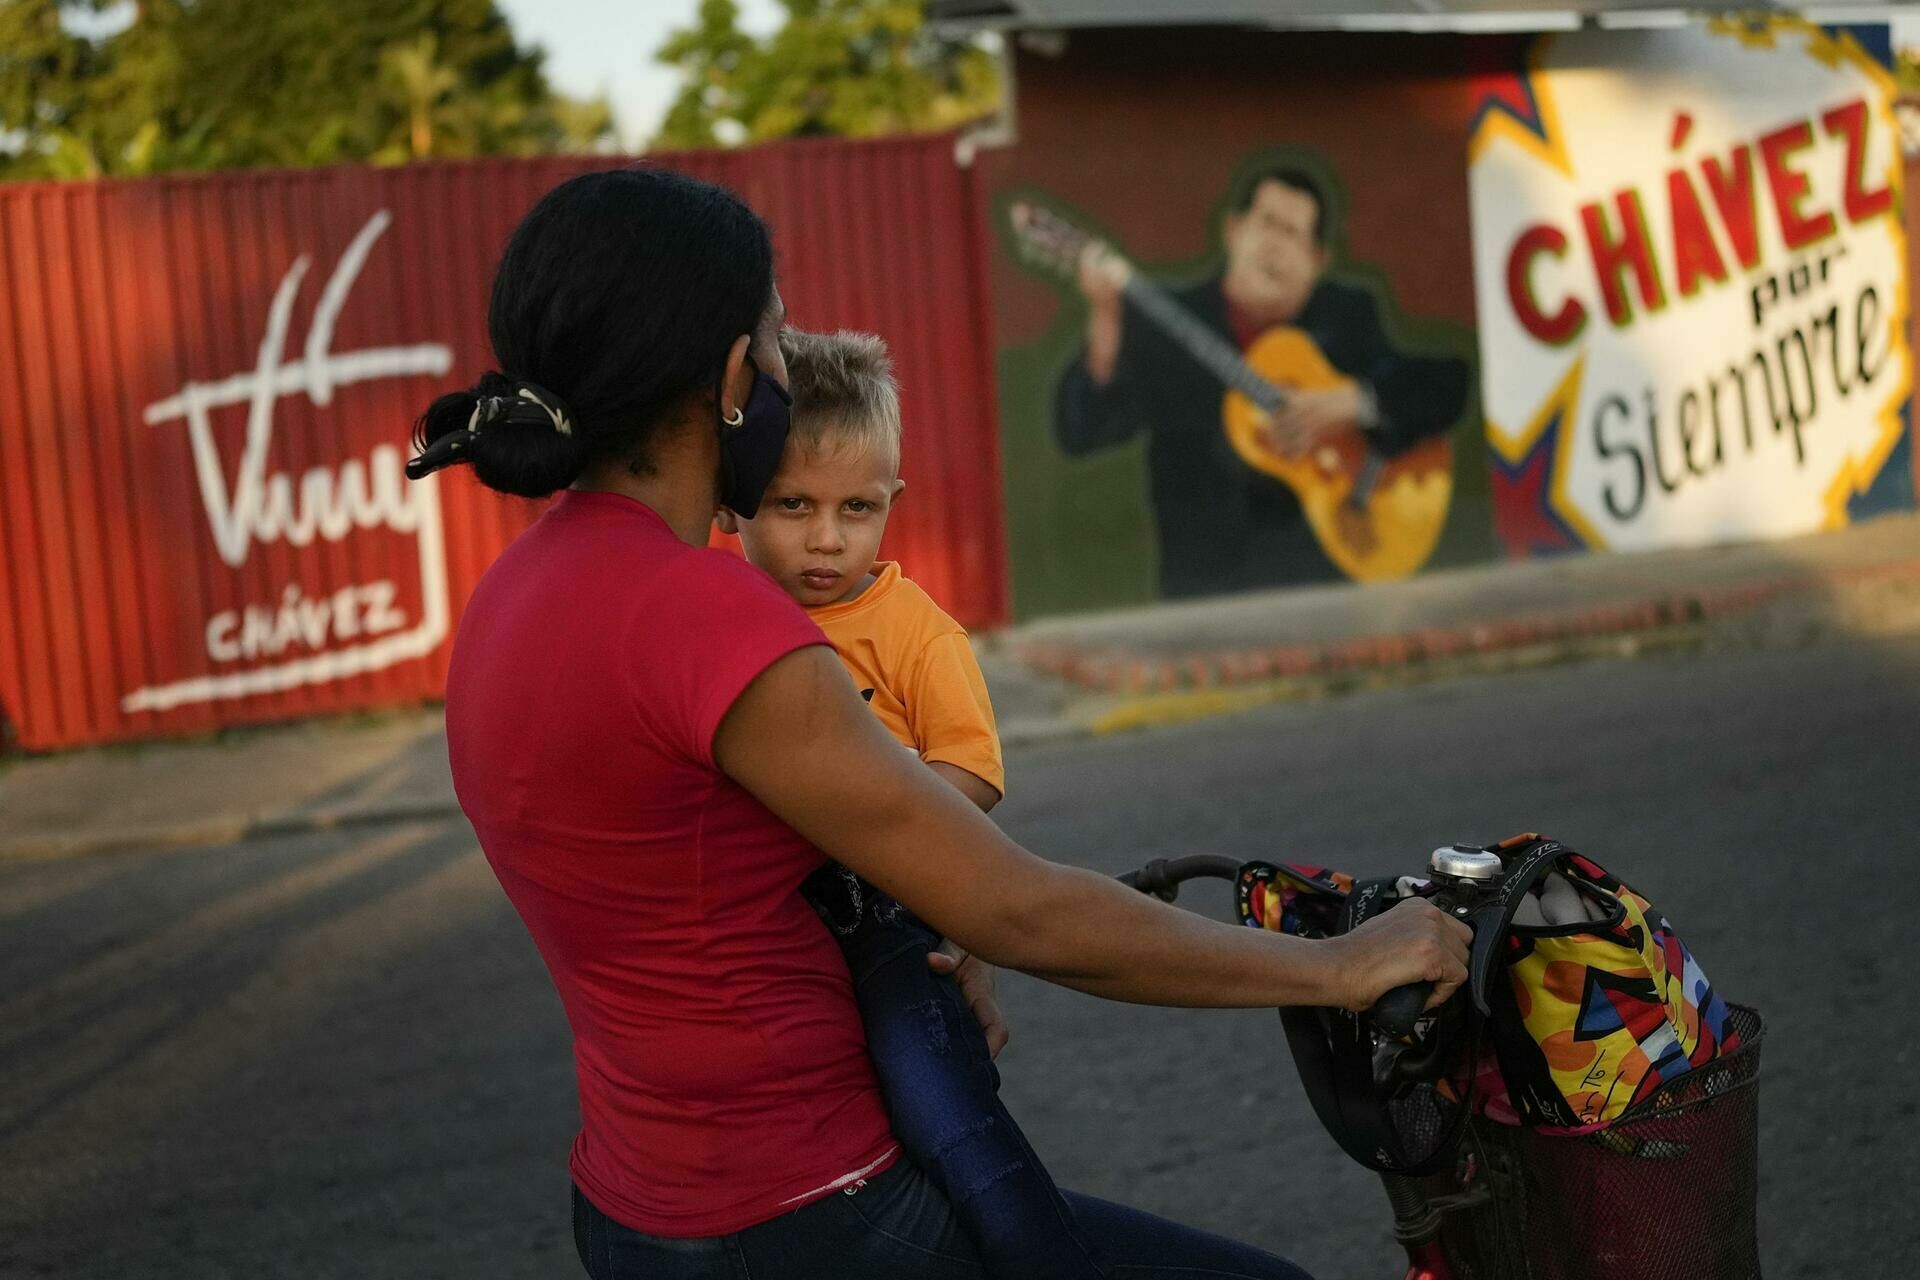 Унижение режиму: оппозиция в Венесуэле победила родного брата Уго Чавеса